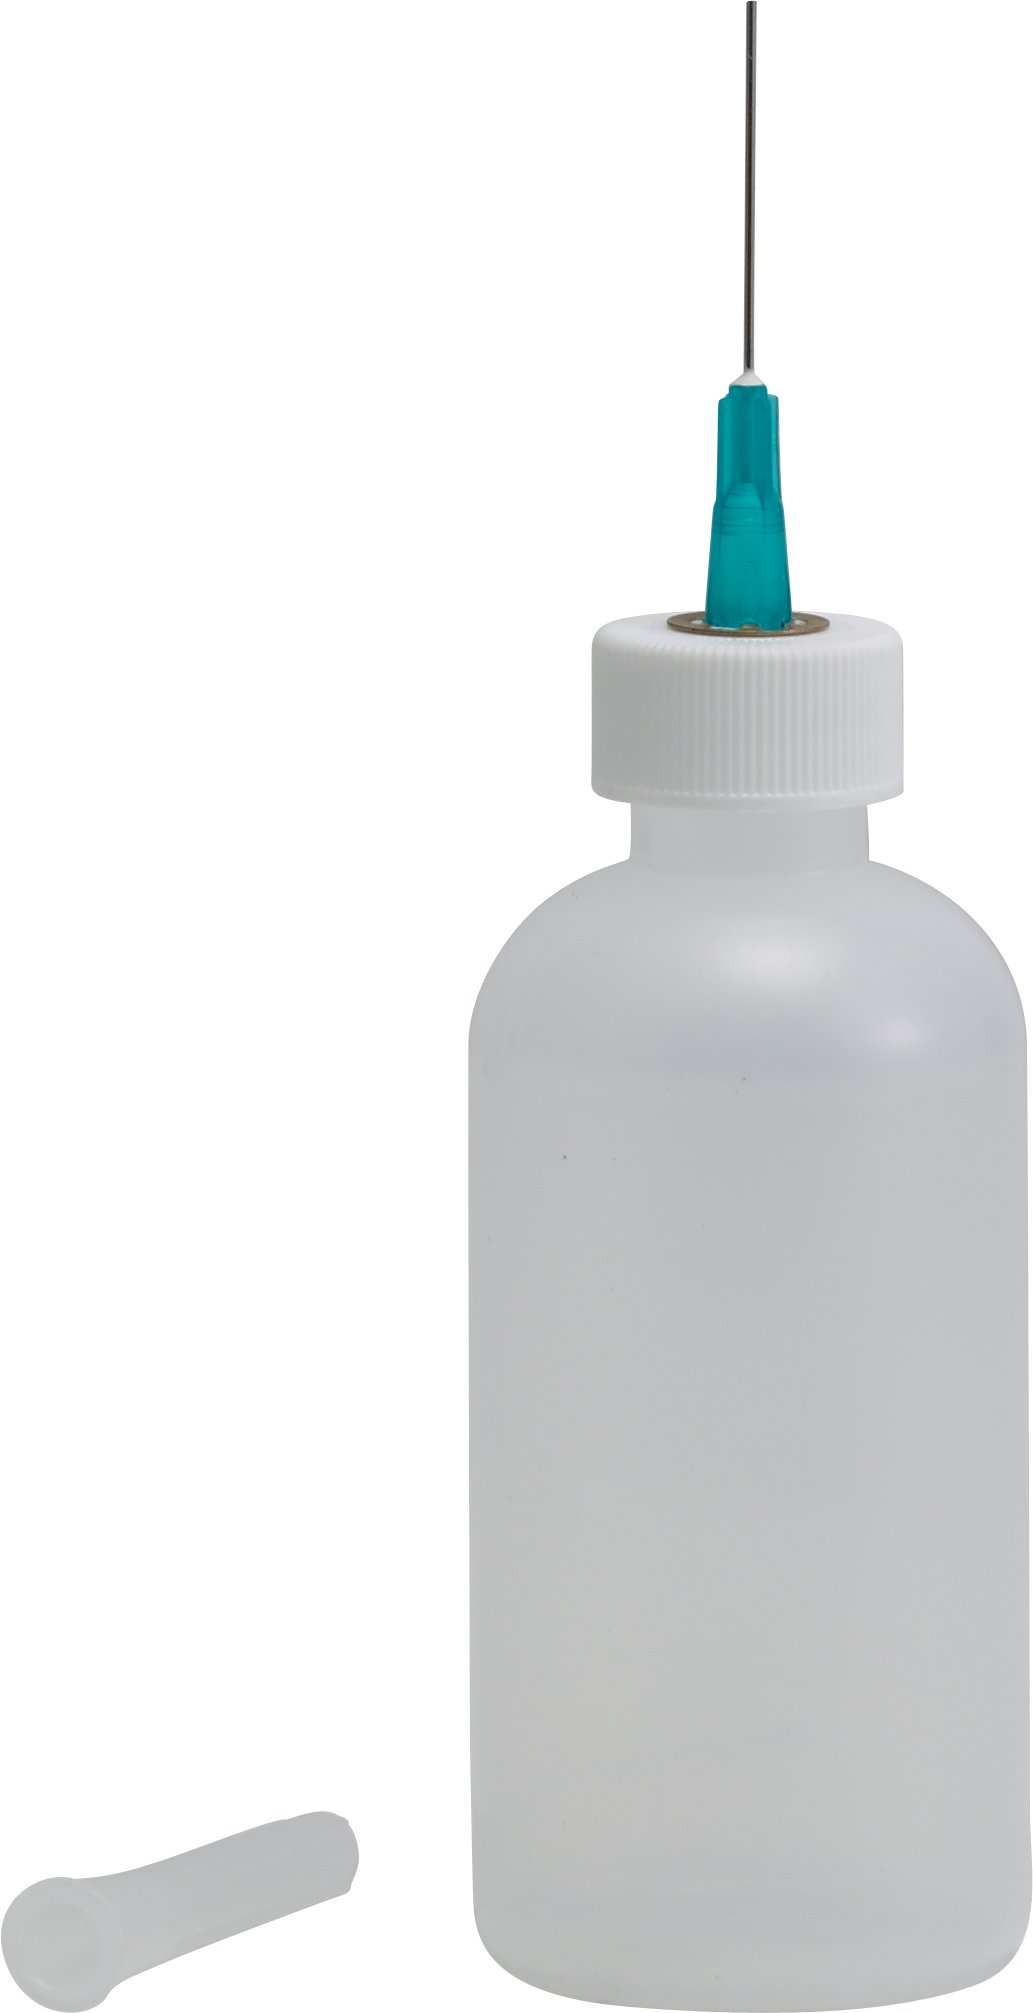 Fluxit Dispenser Bottle 